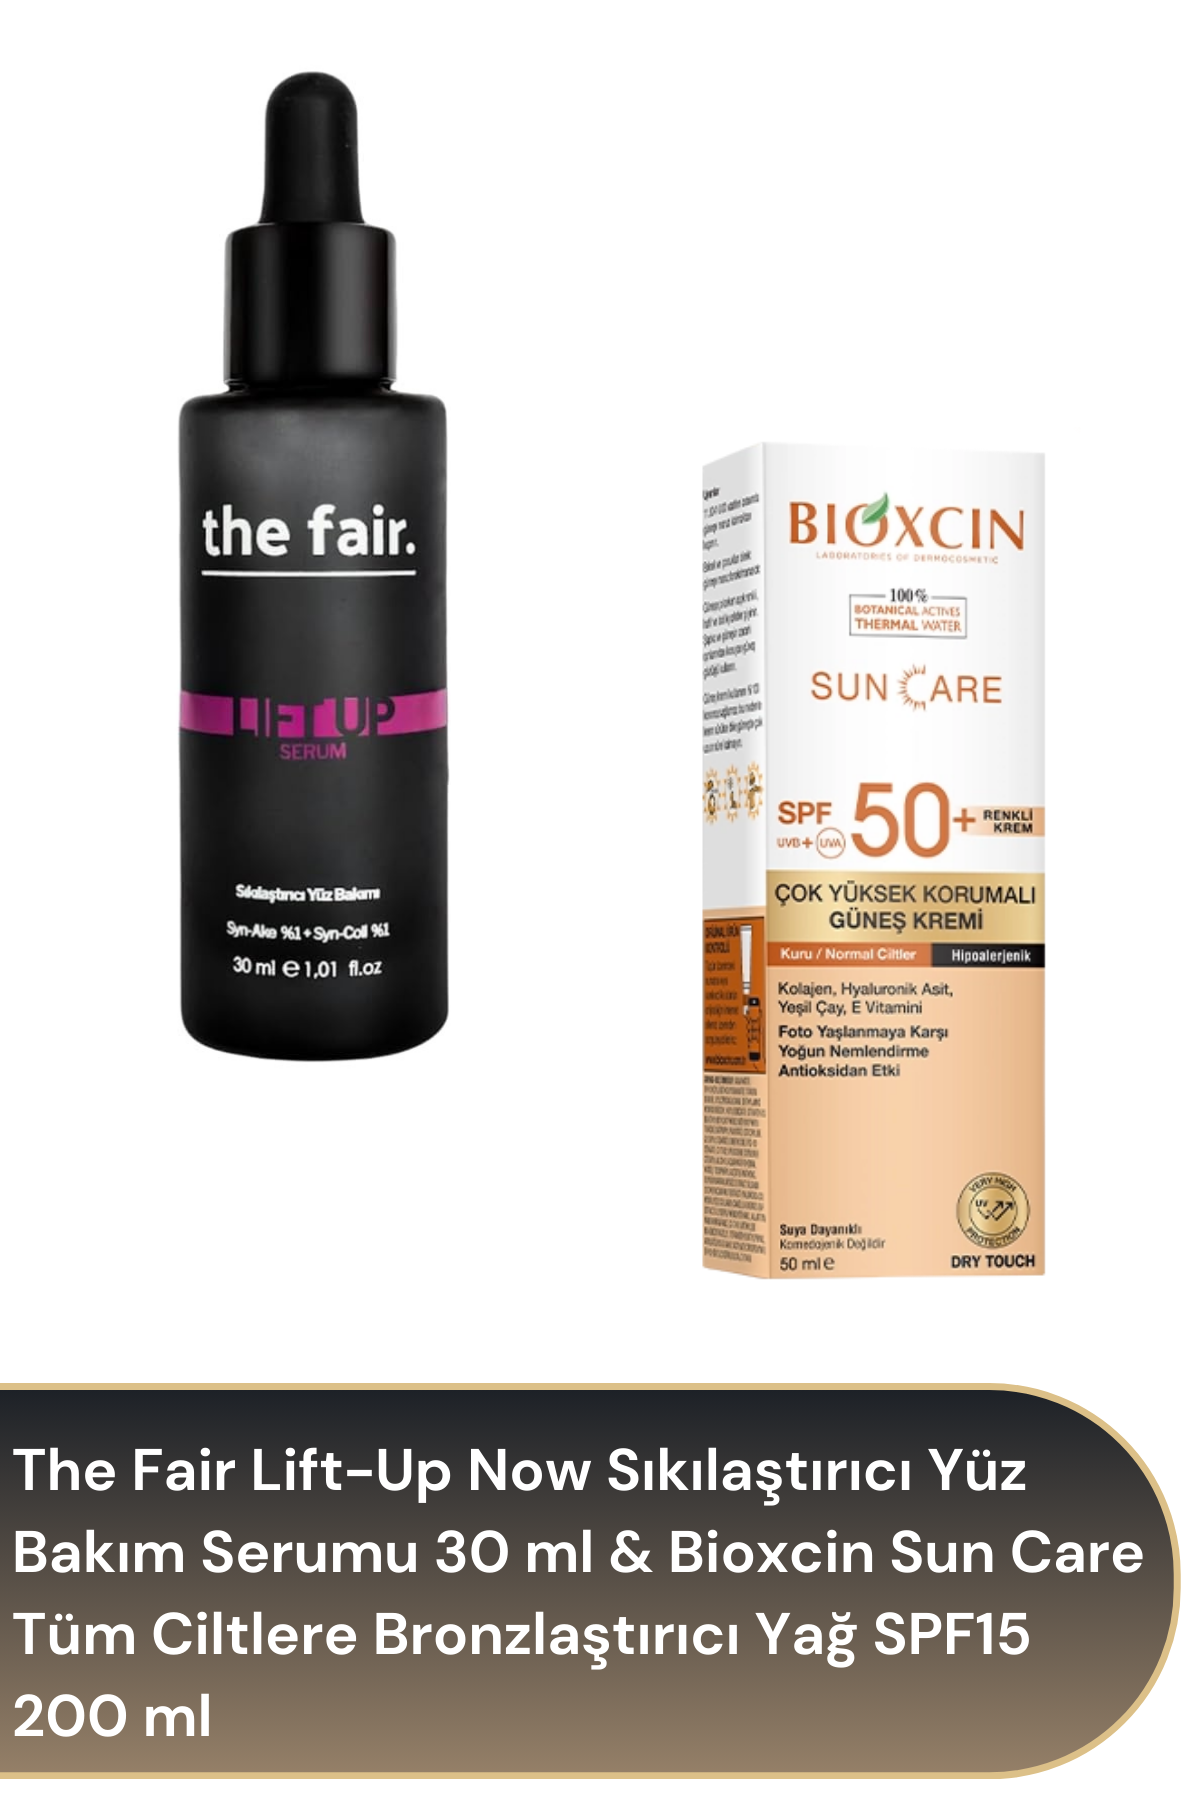 The Fair Lift-Up Now Sıkılaştırıcı Yüz Bakım Serumu 30 ml & Bioxcin Sun Care Tüm Ciltlere Bronzlaştırıcı Yağ SPF15 200 ml Avantajlı Paket